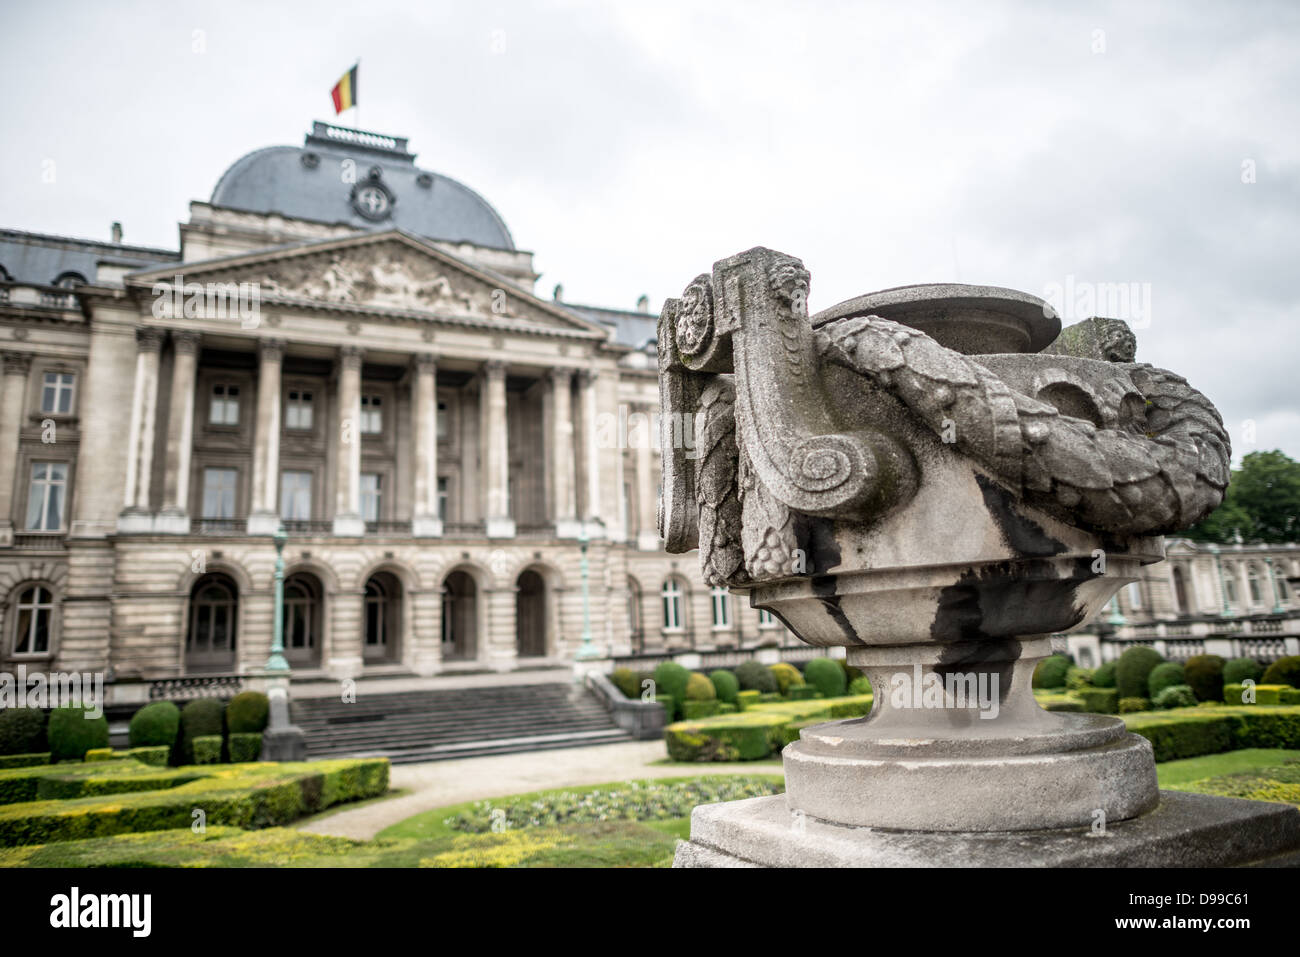 Brüssel, Belgien - eine urne vor dem Königlichen Palast von Brüssel, die offizielle Palast der Königlichen Familie. Stockfoto